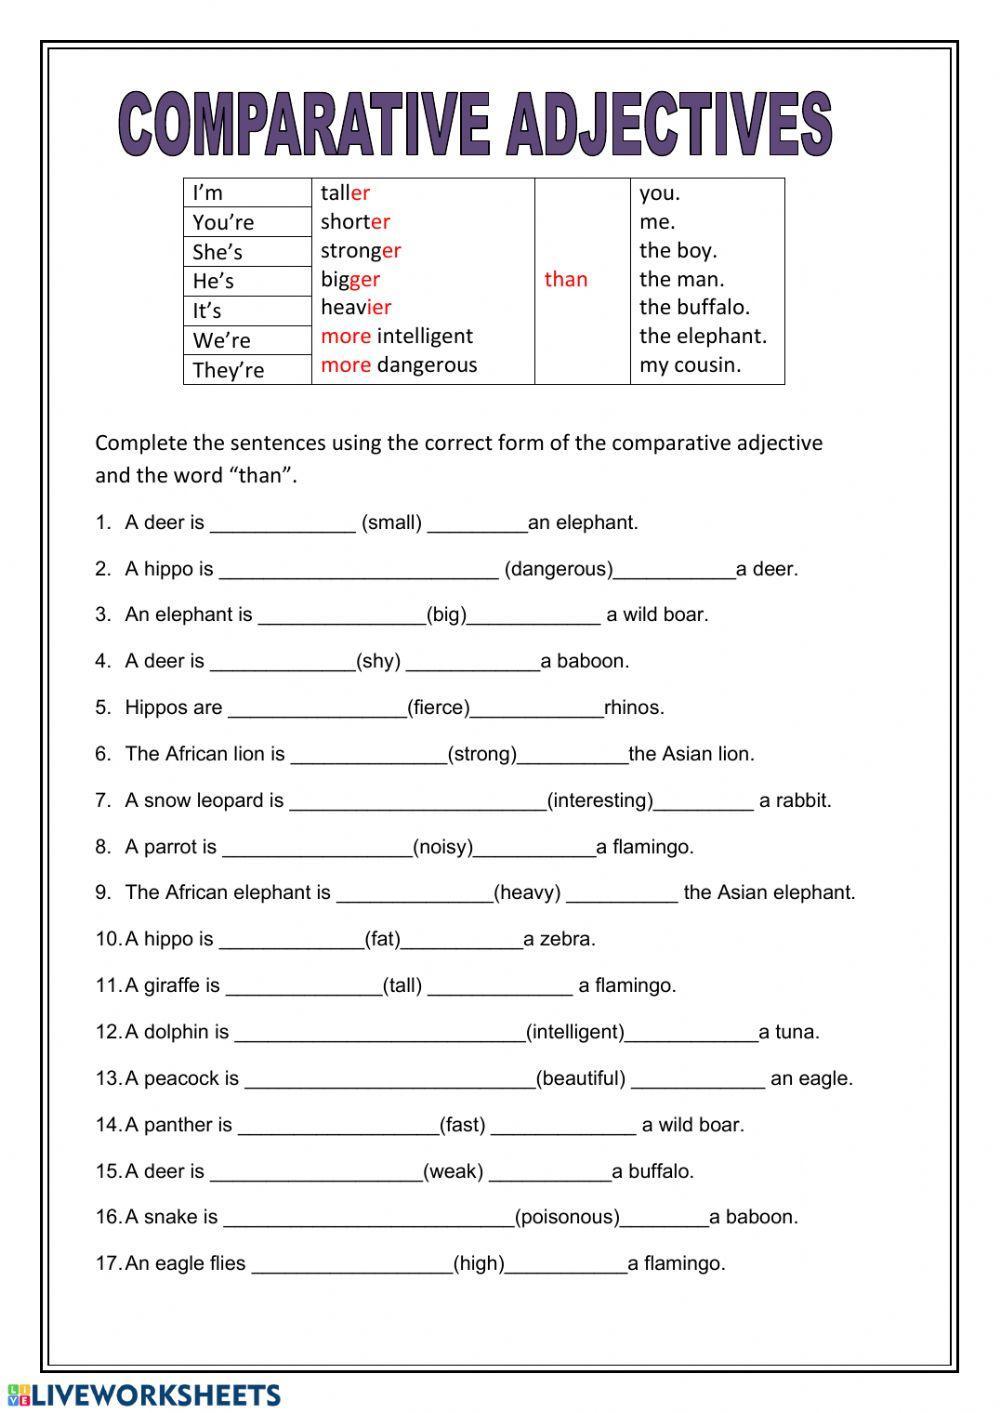 grammar-comparative-adjectives-worksheet-live-worksheets